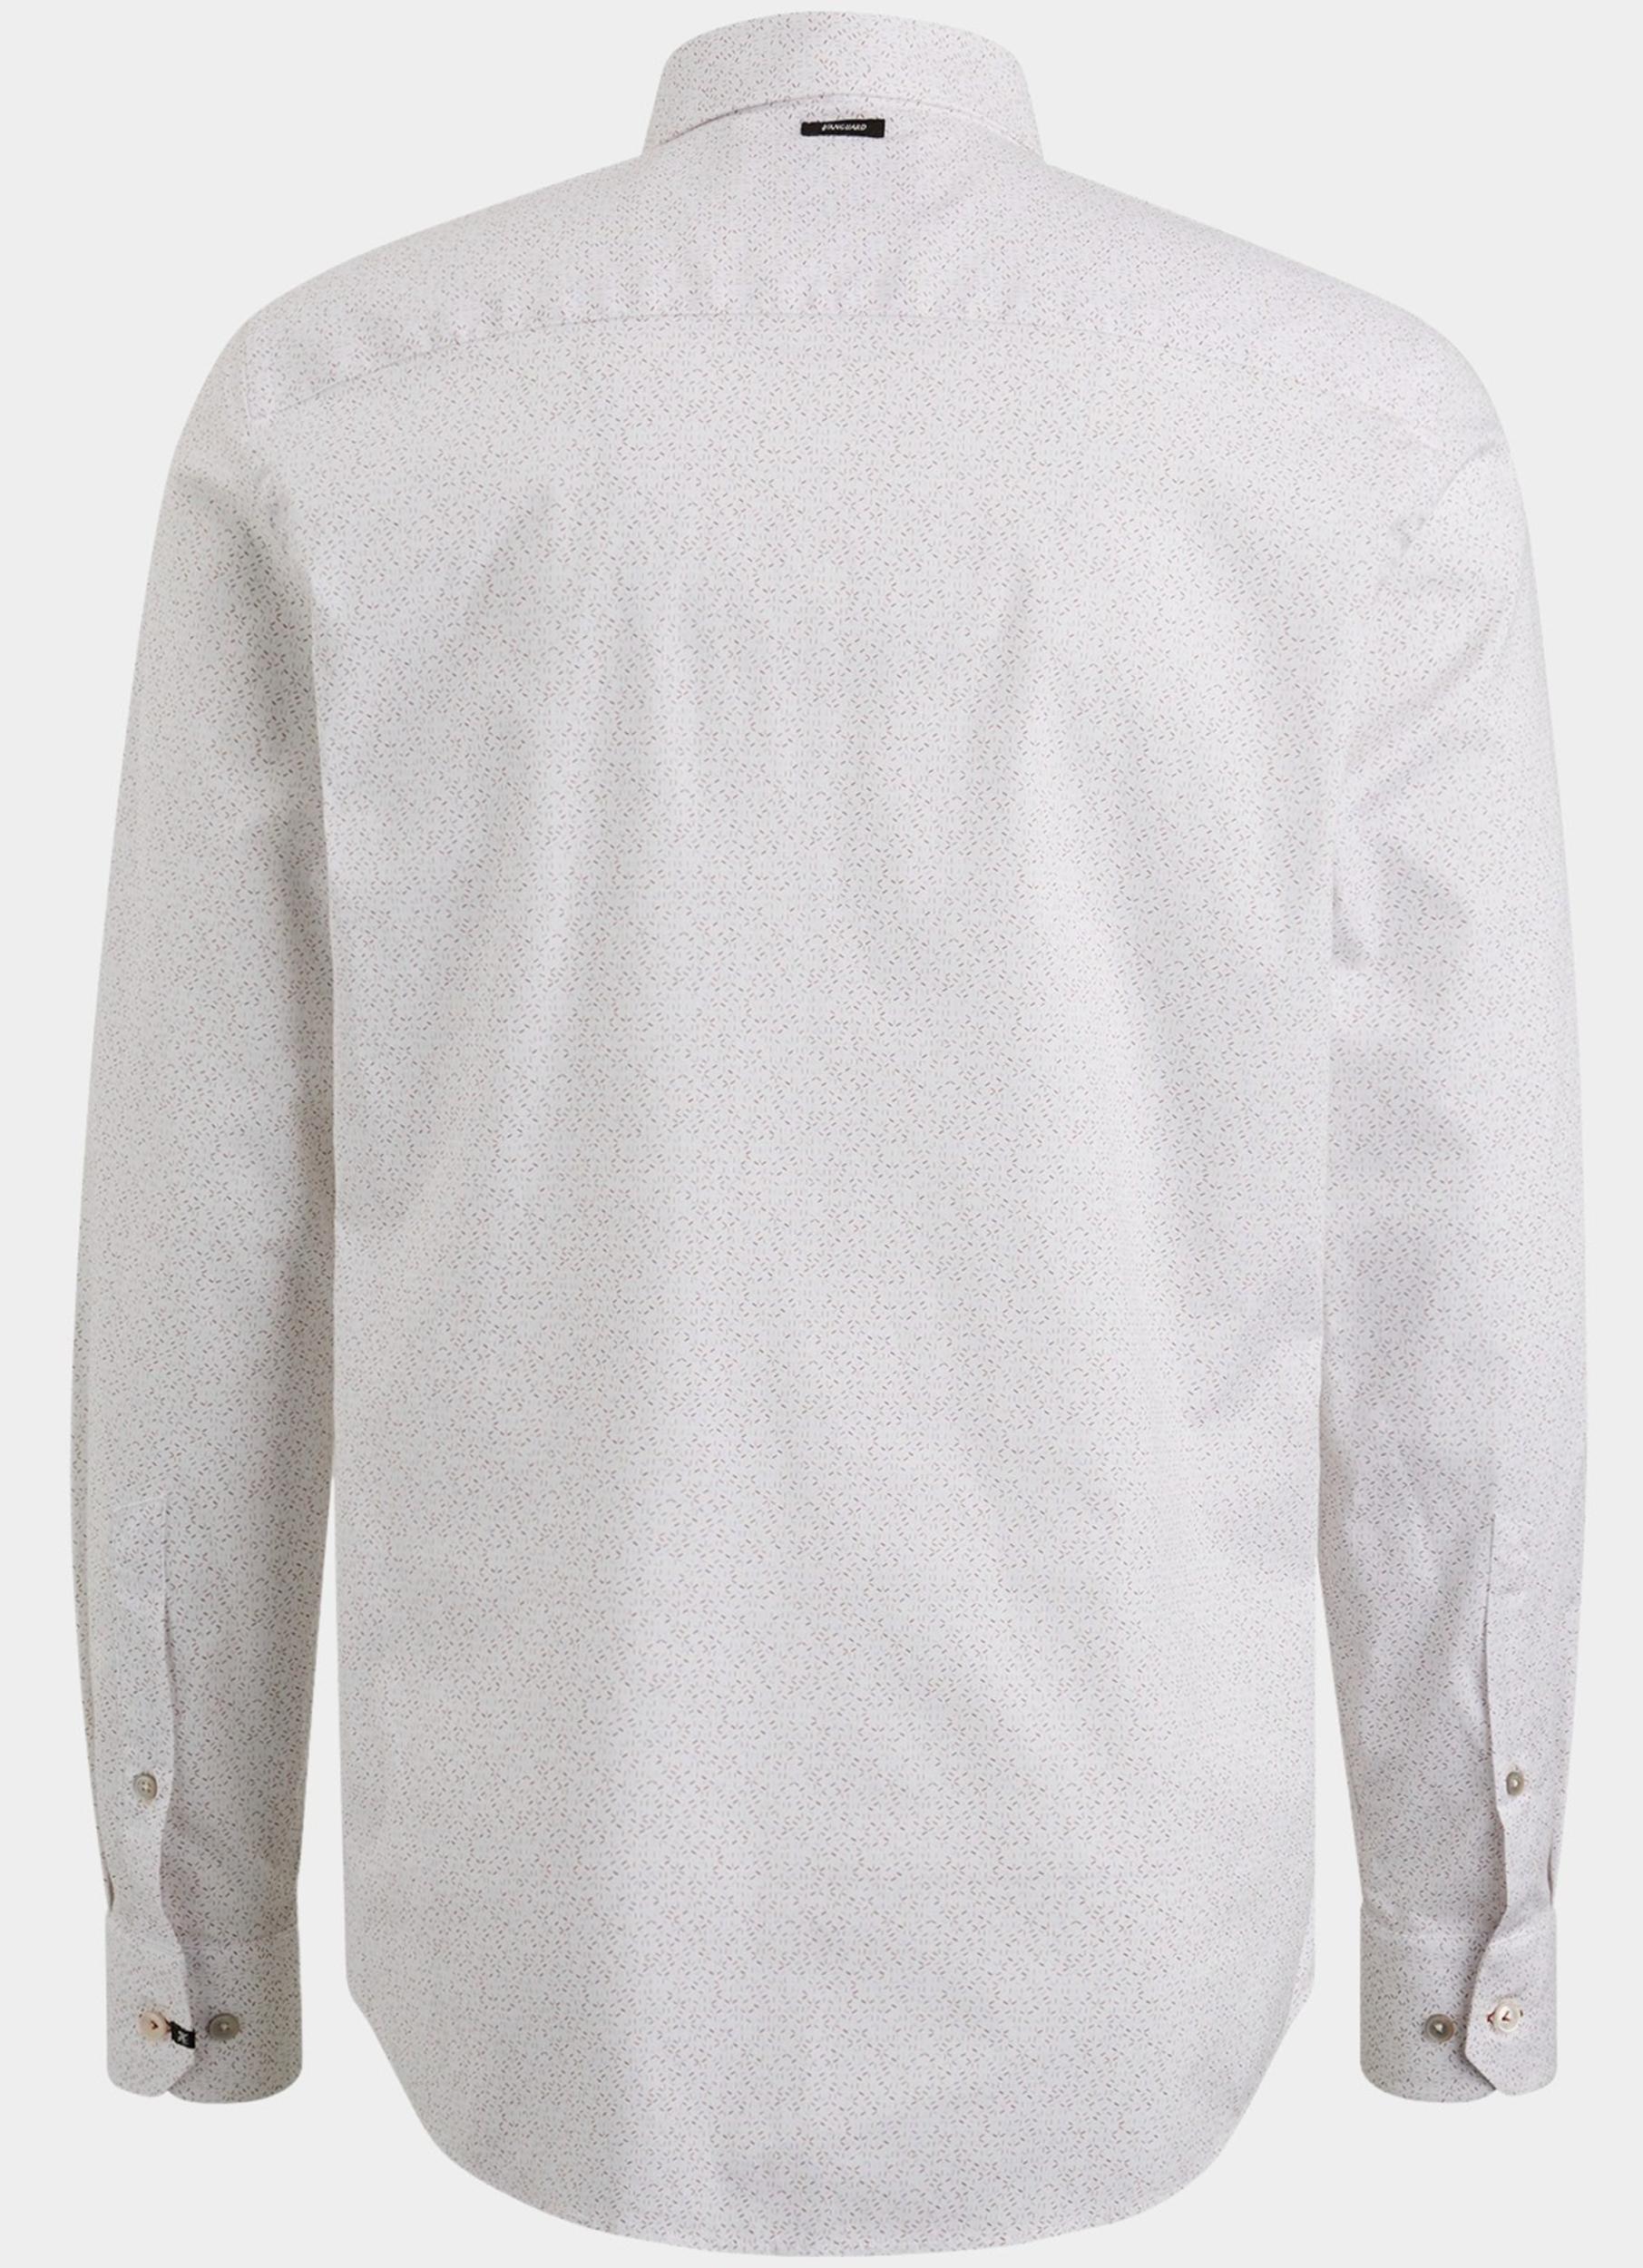 Vanguard Casual hemd lange mouw Wit Long Sleeve Shirt Print on po VSI2402206/7149